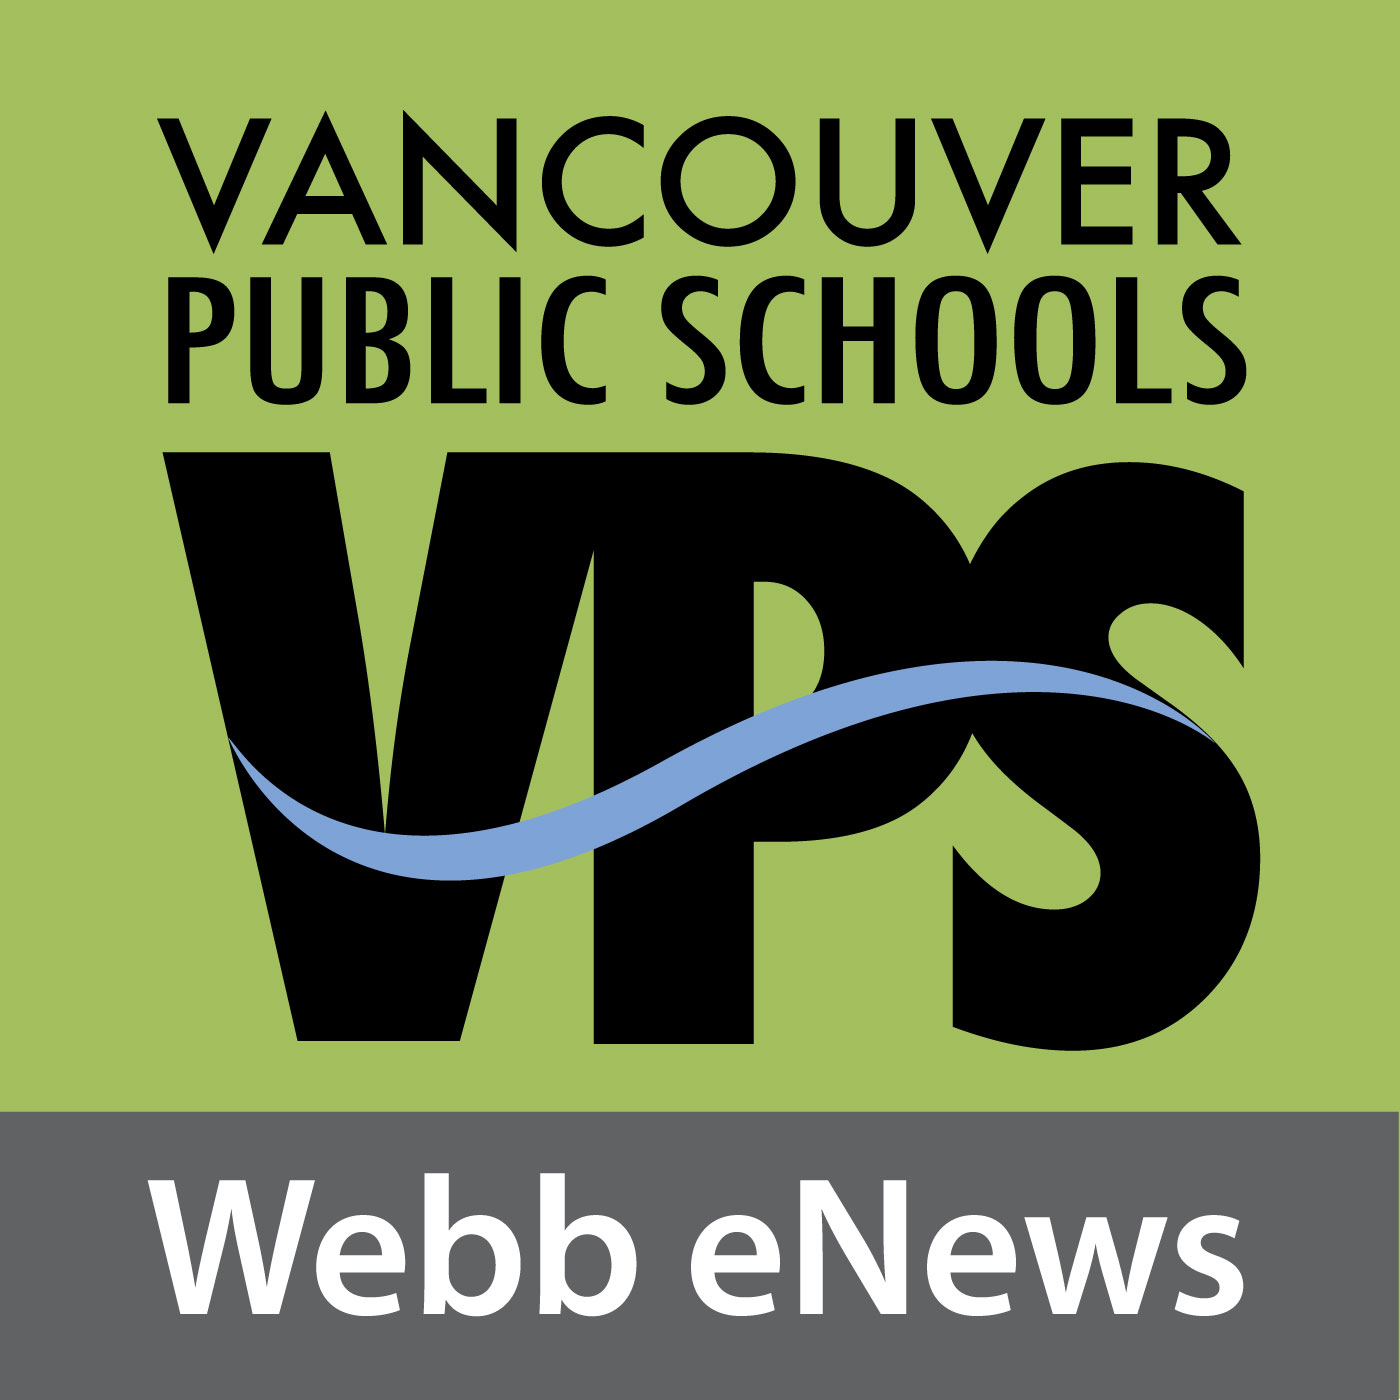 Vancouver Public Schools - Webb eNews